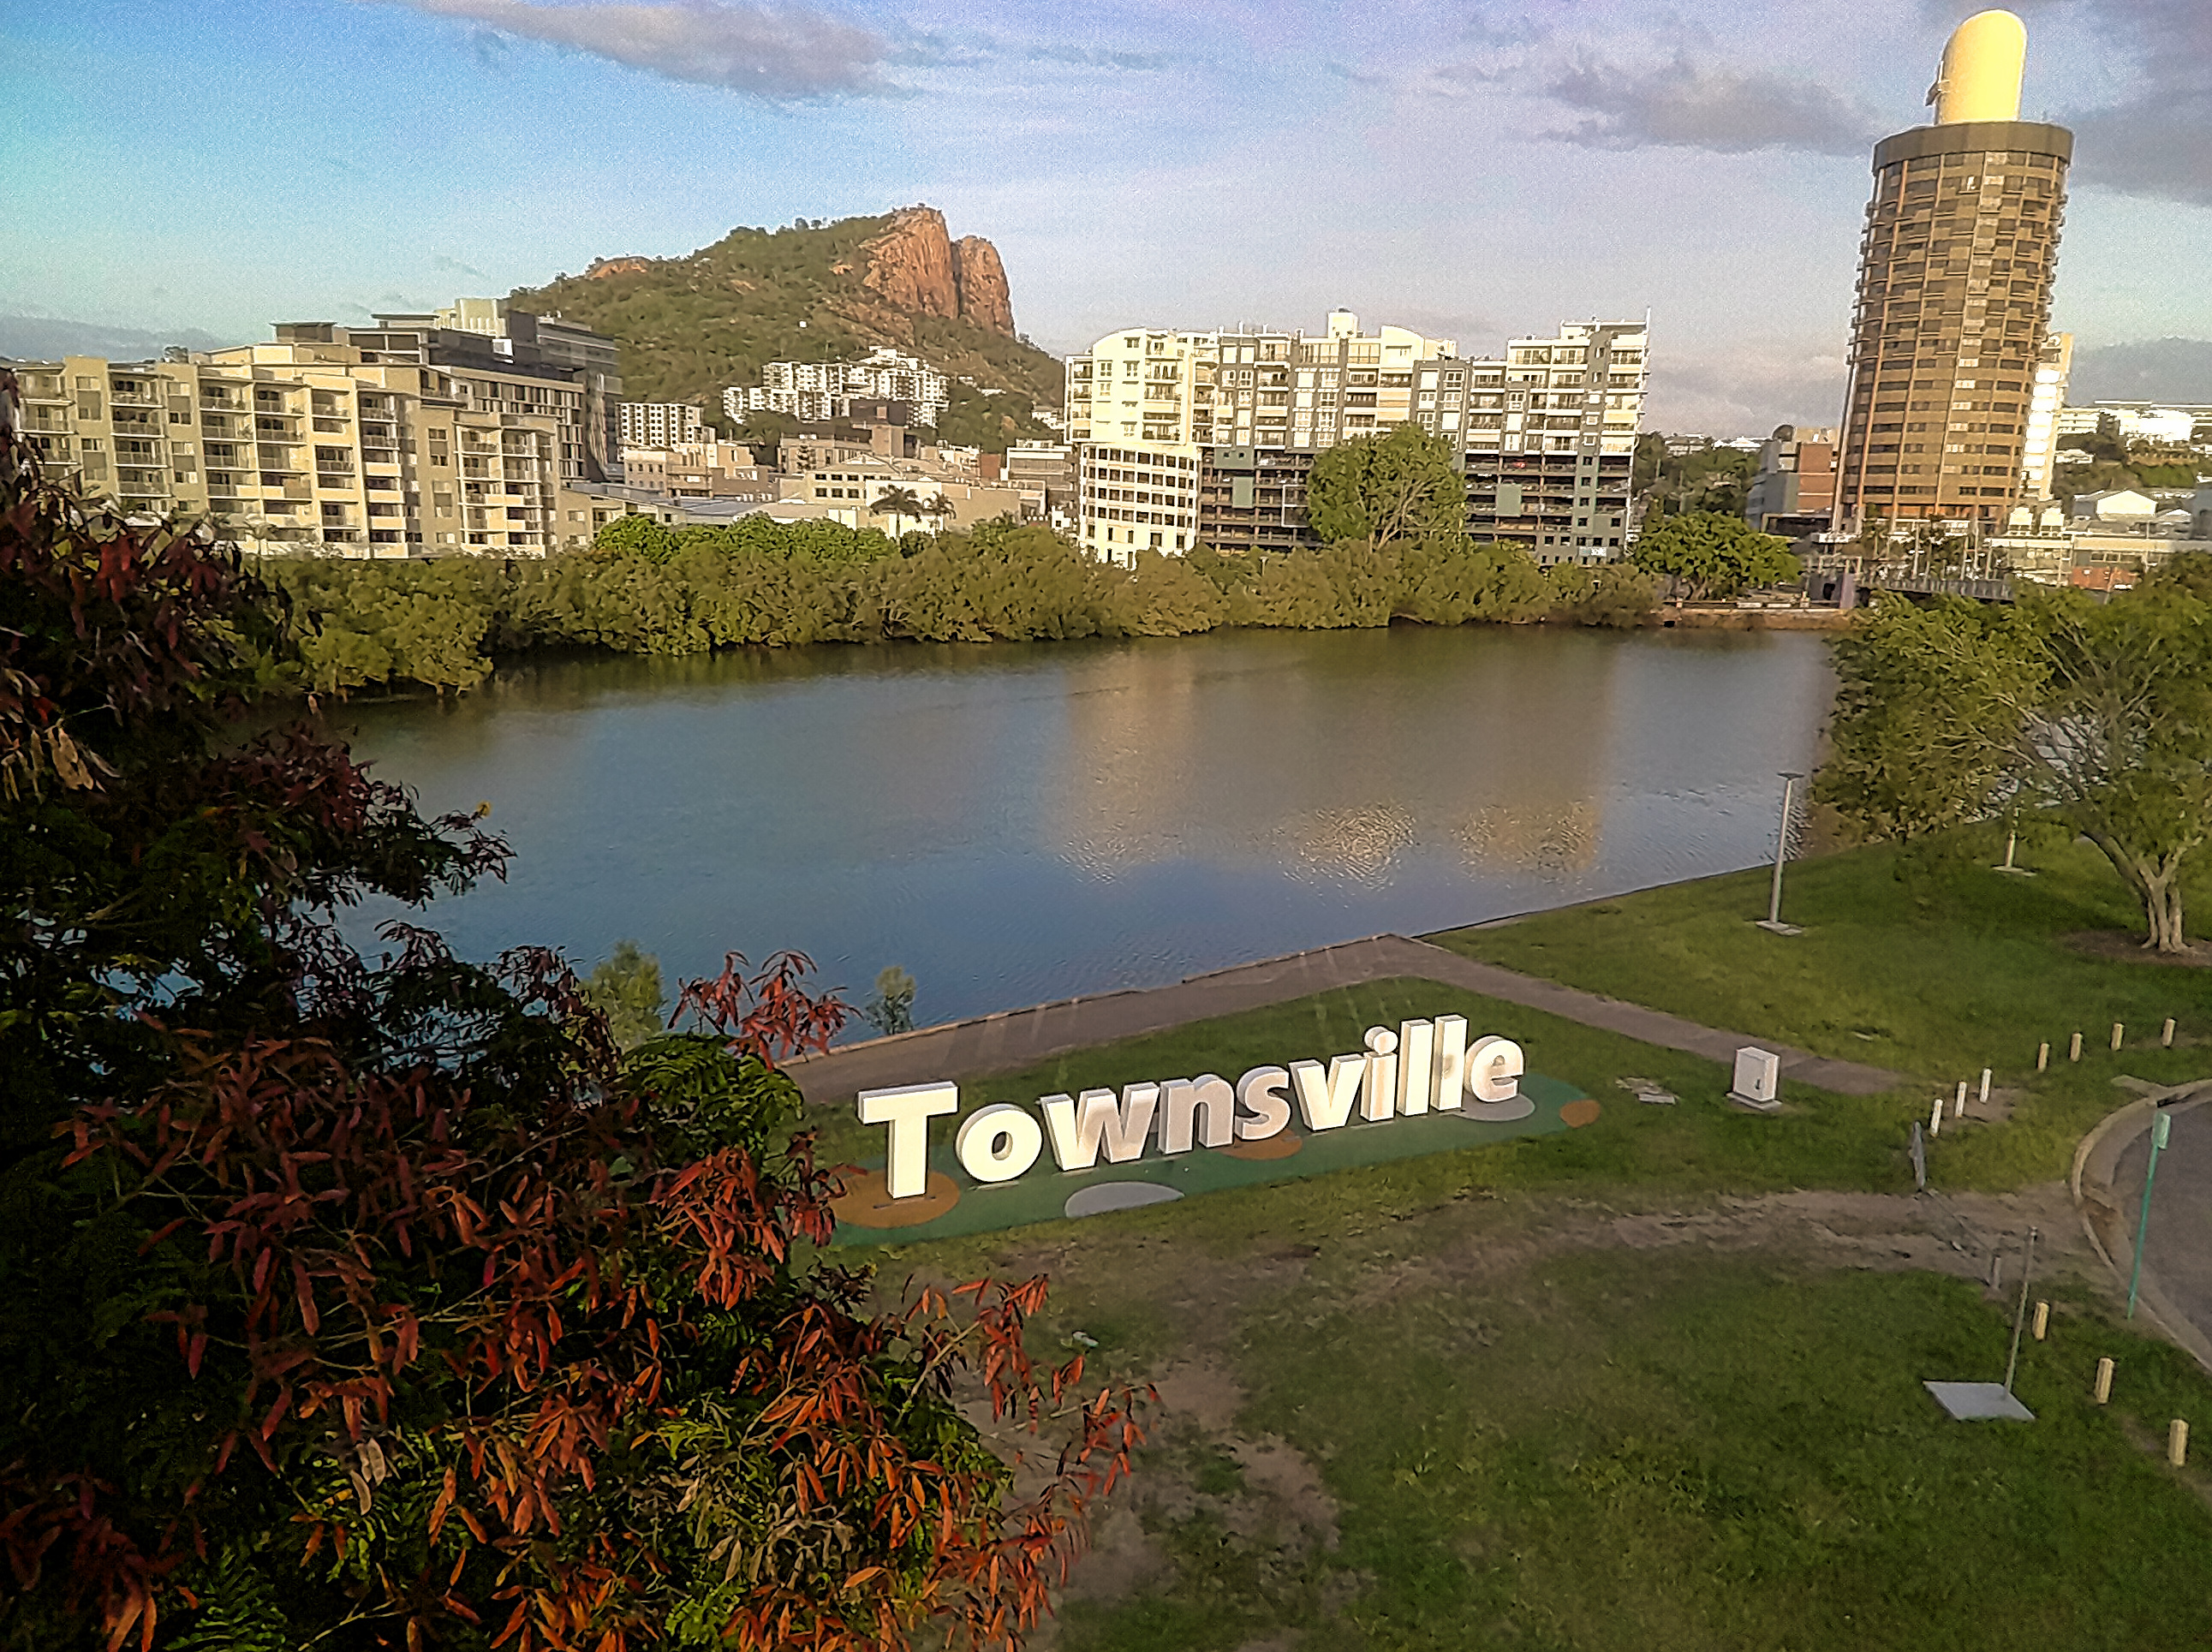 Townsville-Tello.jpg